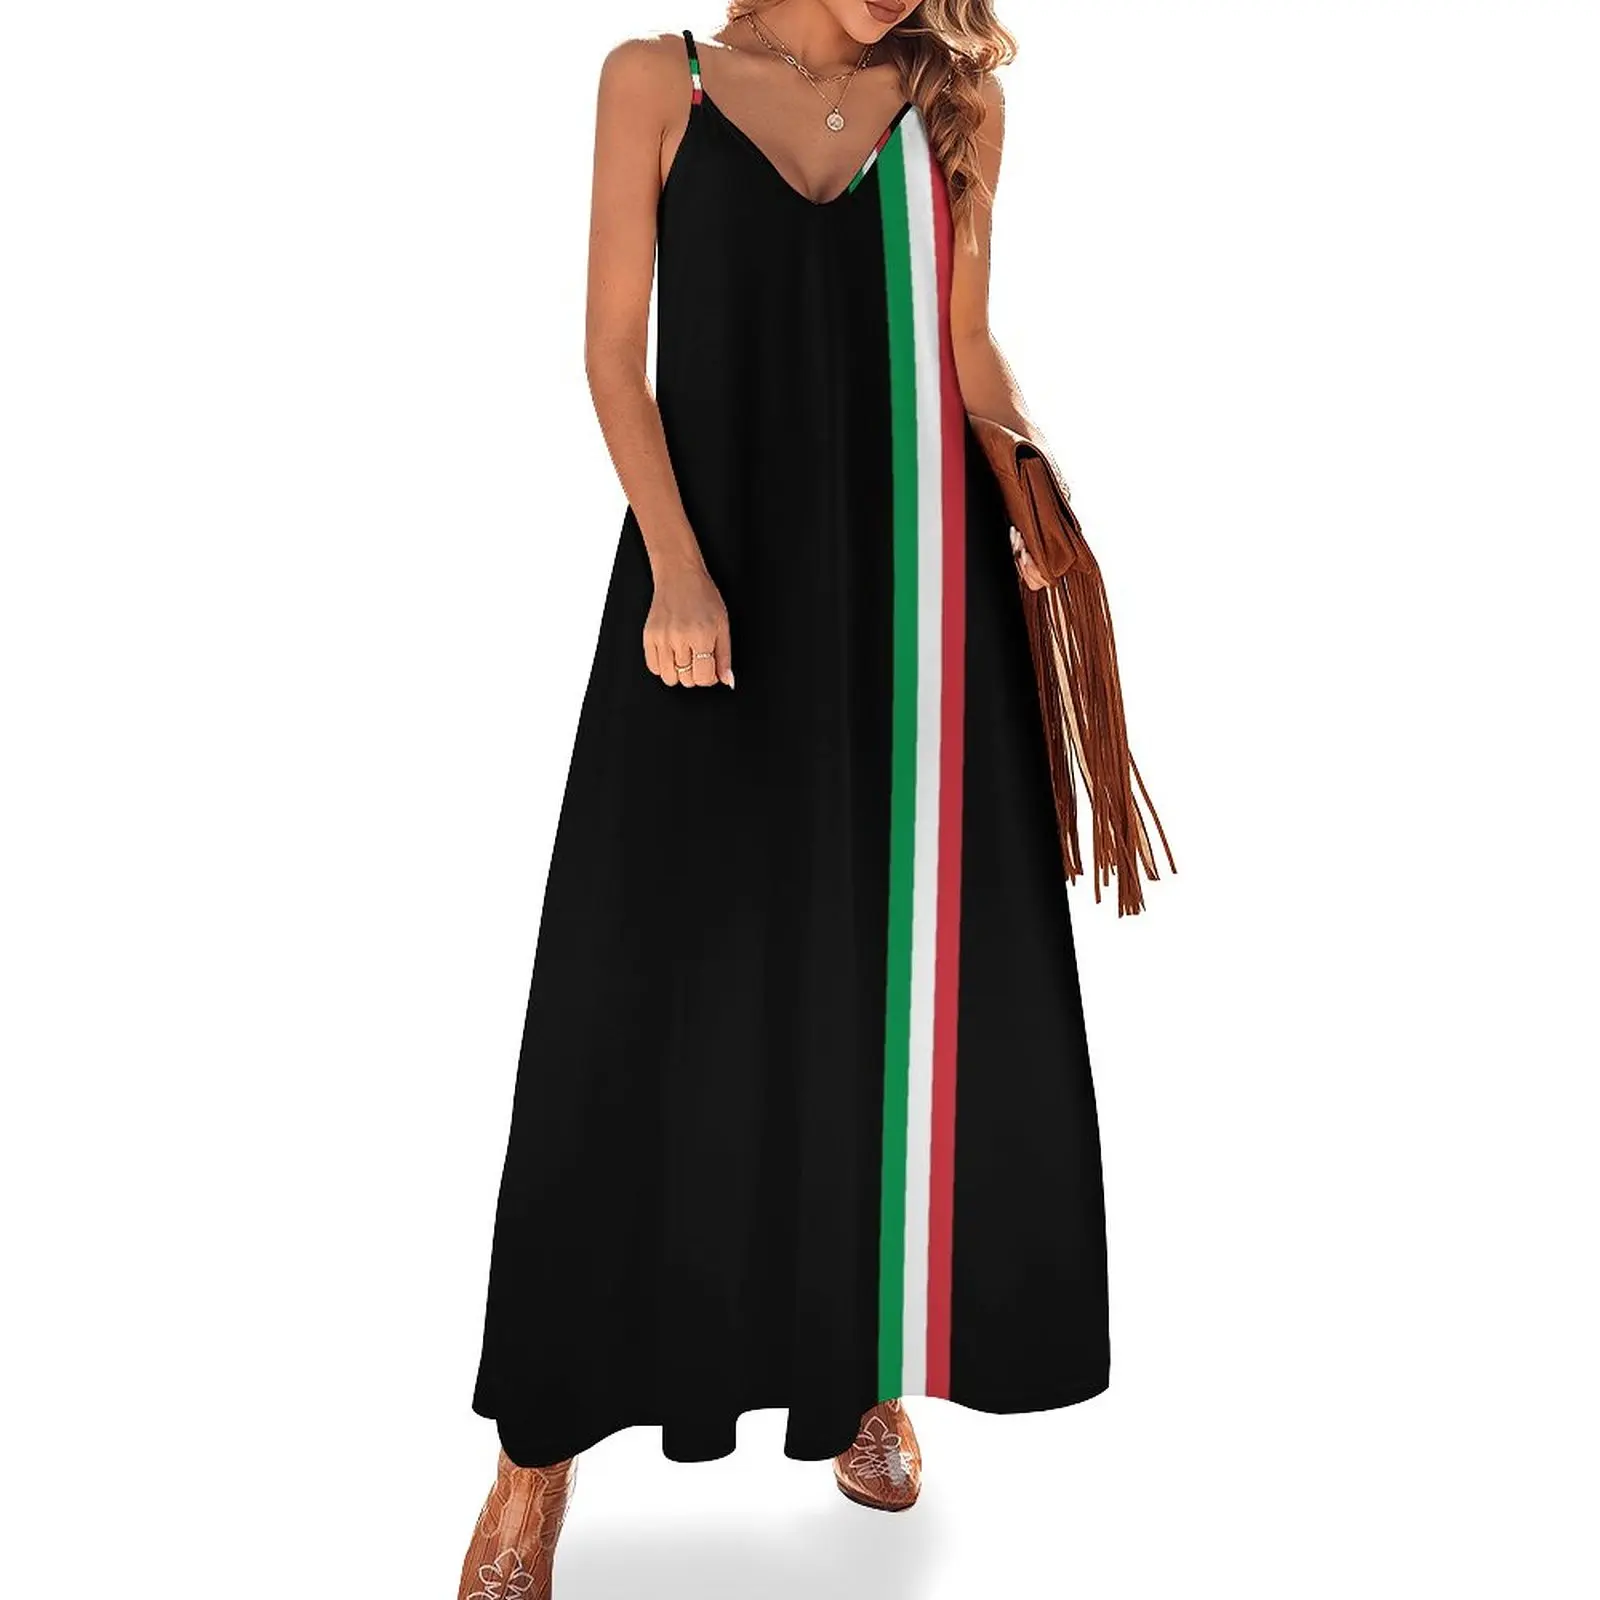 

Платье без рукавов il трехцветное с итальянским флагом, вечерние платья для женщин, роскошное вечернее платье